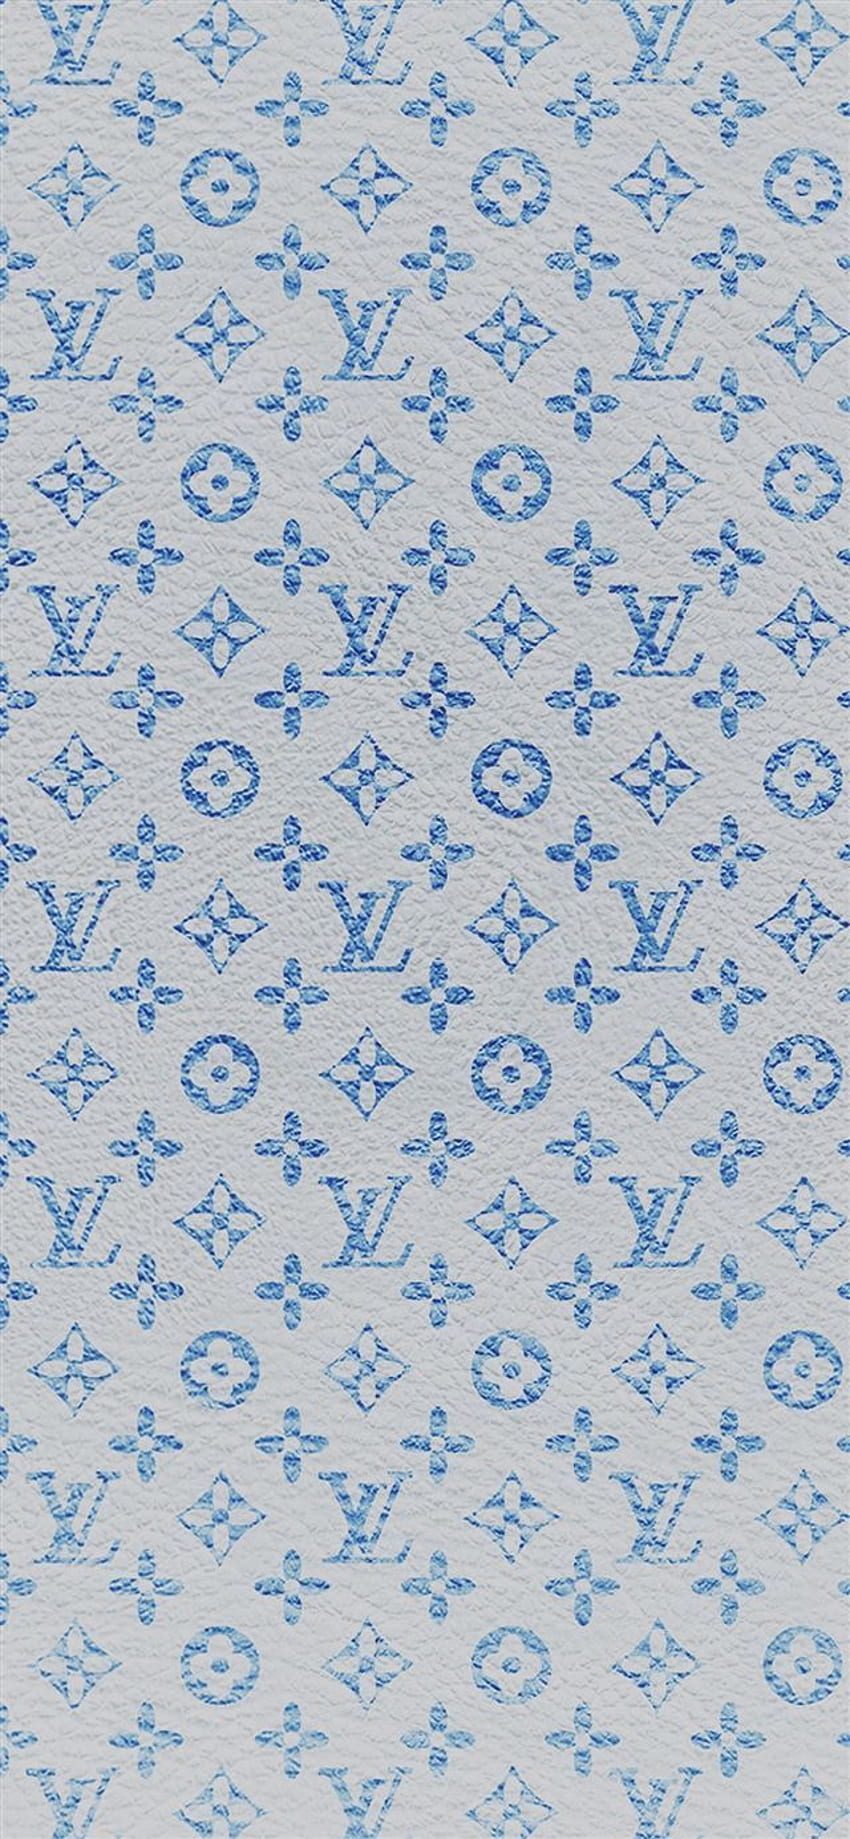 Louis Vuitton art motif bleu iPhone X Fond d'écran Télécharger. Fonds d'écran iPhone in 2020. Louis vuitton iphone , New iphone, Blue iphone HD phone wallpaper